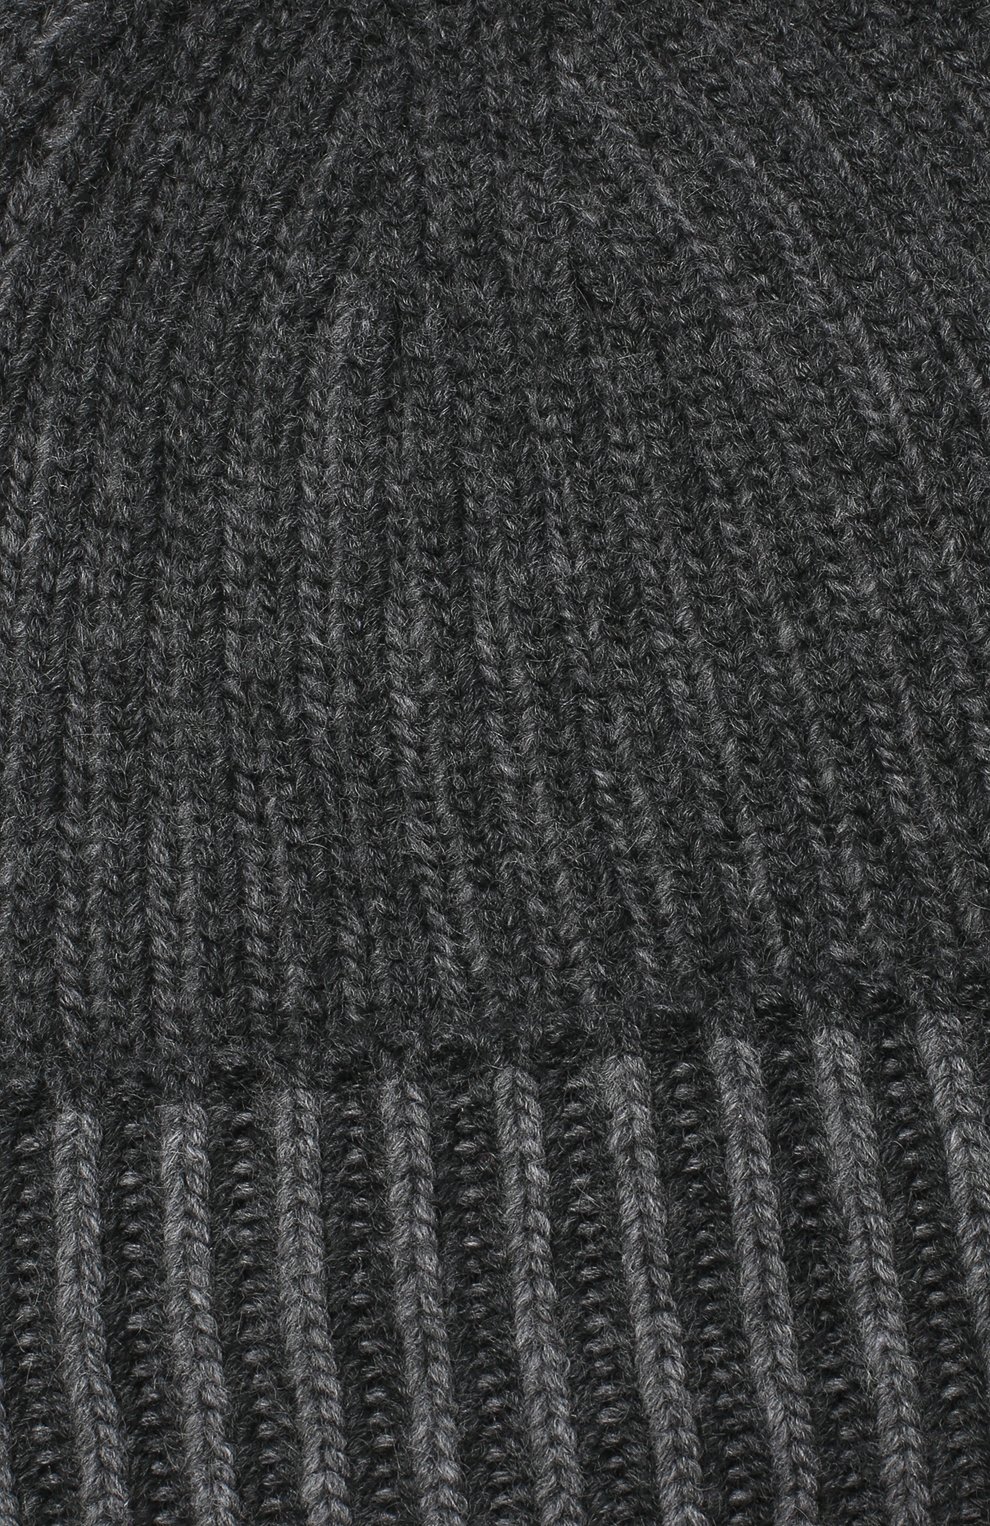 Женская кашемировая шапка BURBERRY серого цвета, арт. 8033756 | Фото 3 (Материал: Текстиль, Кашемир, Шерсть)